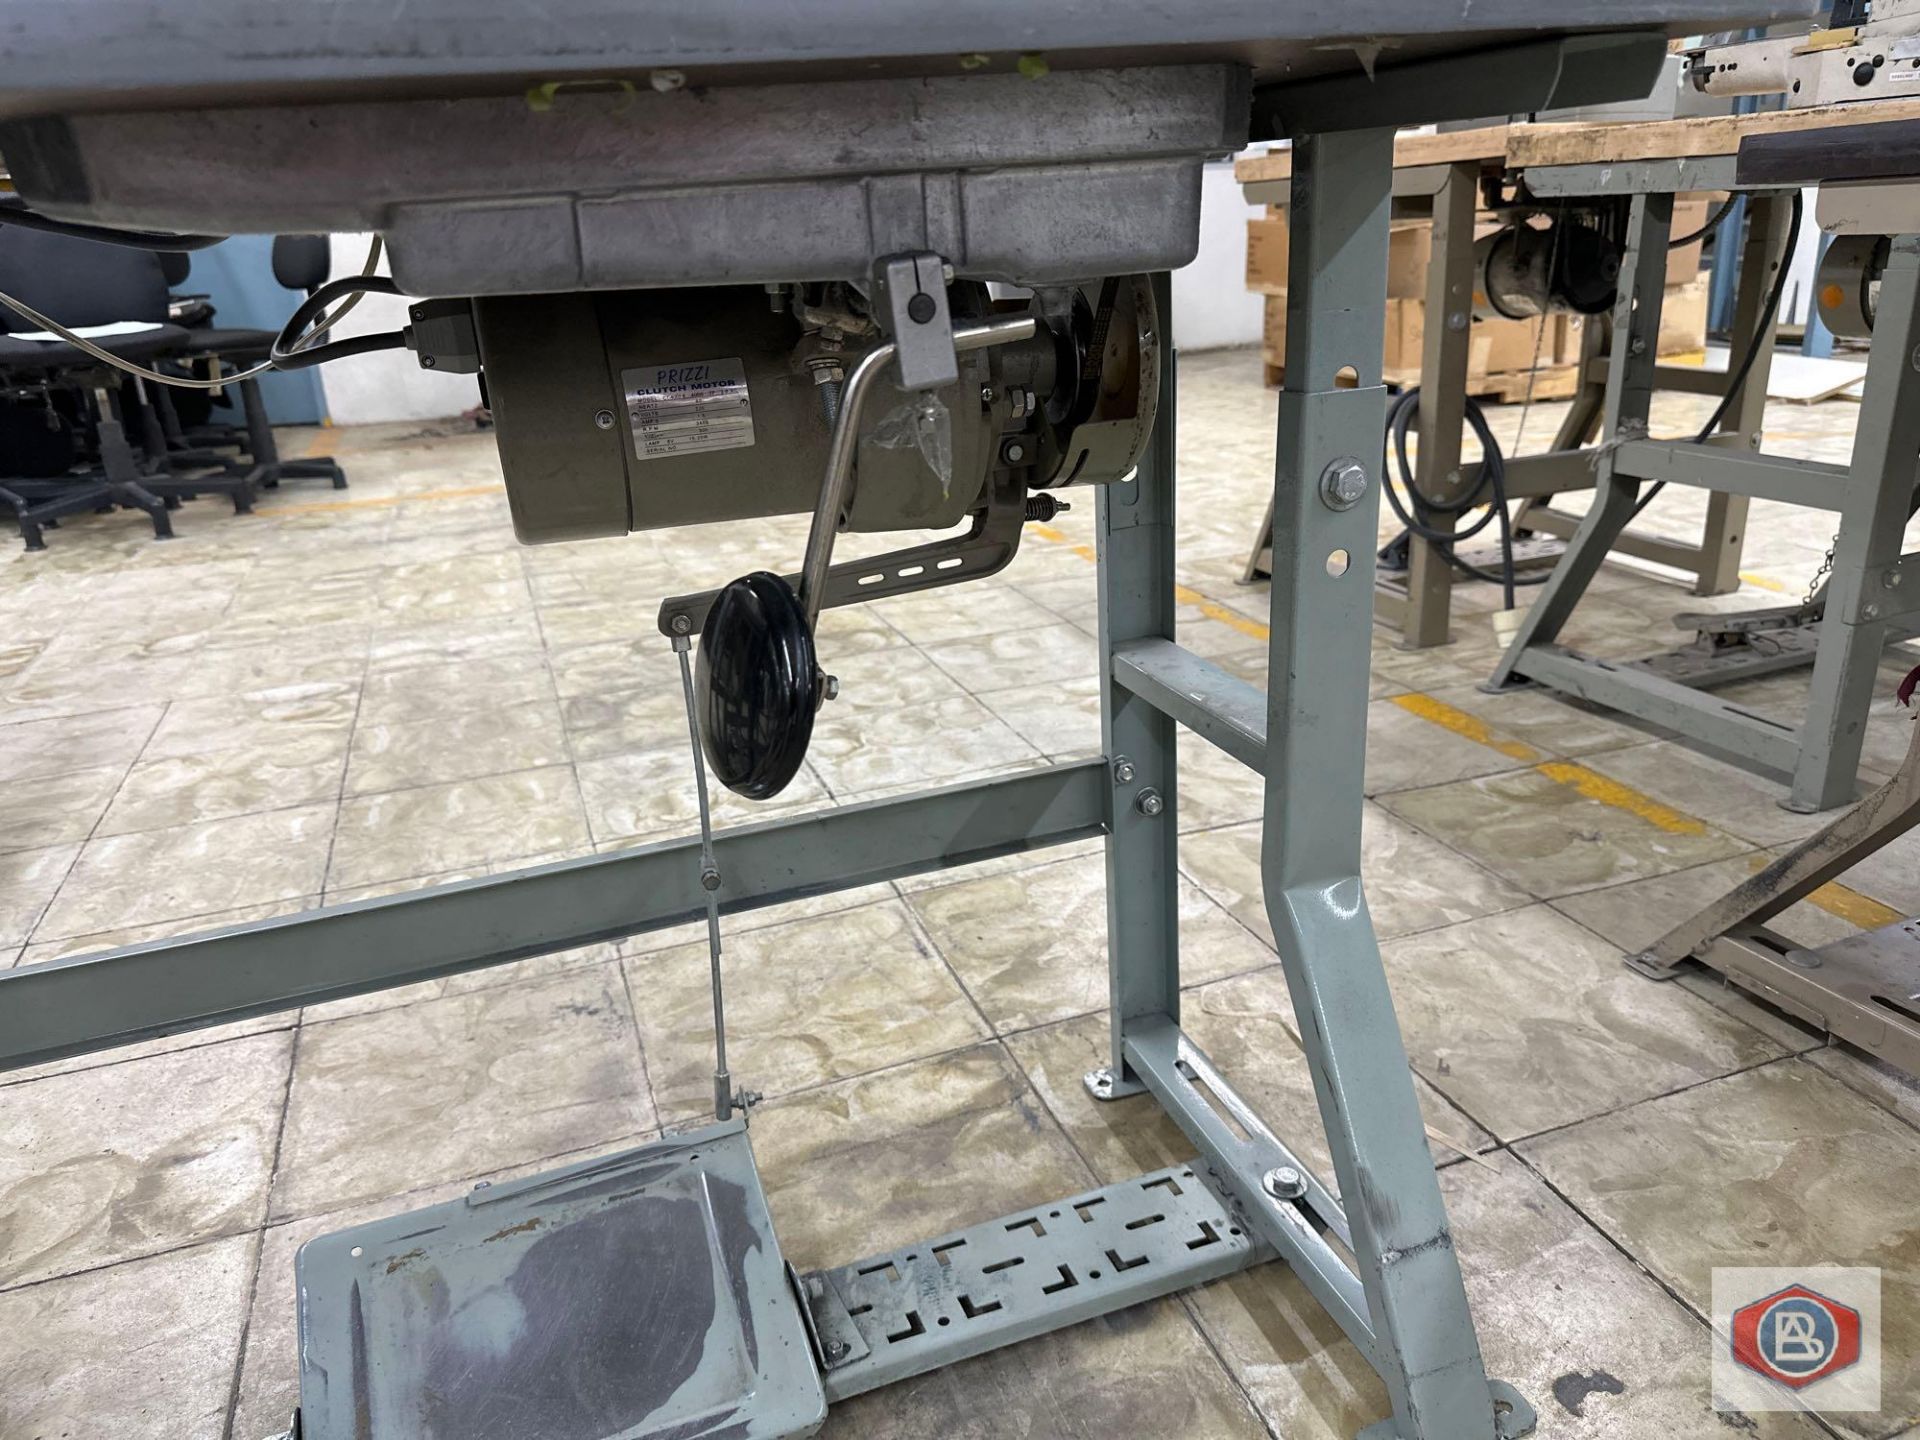 Juki Sewing Machine - Image 3 of 3